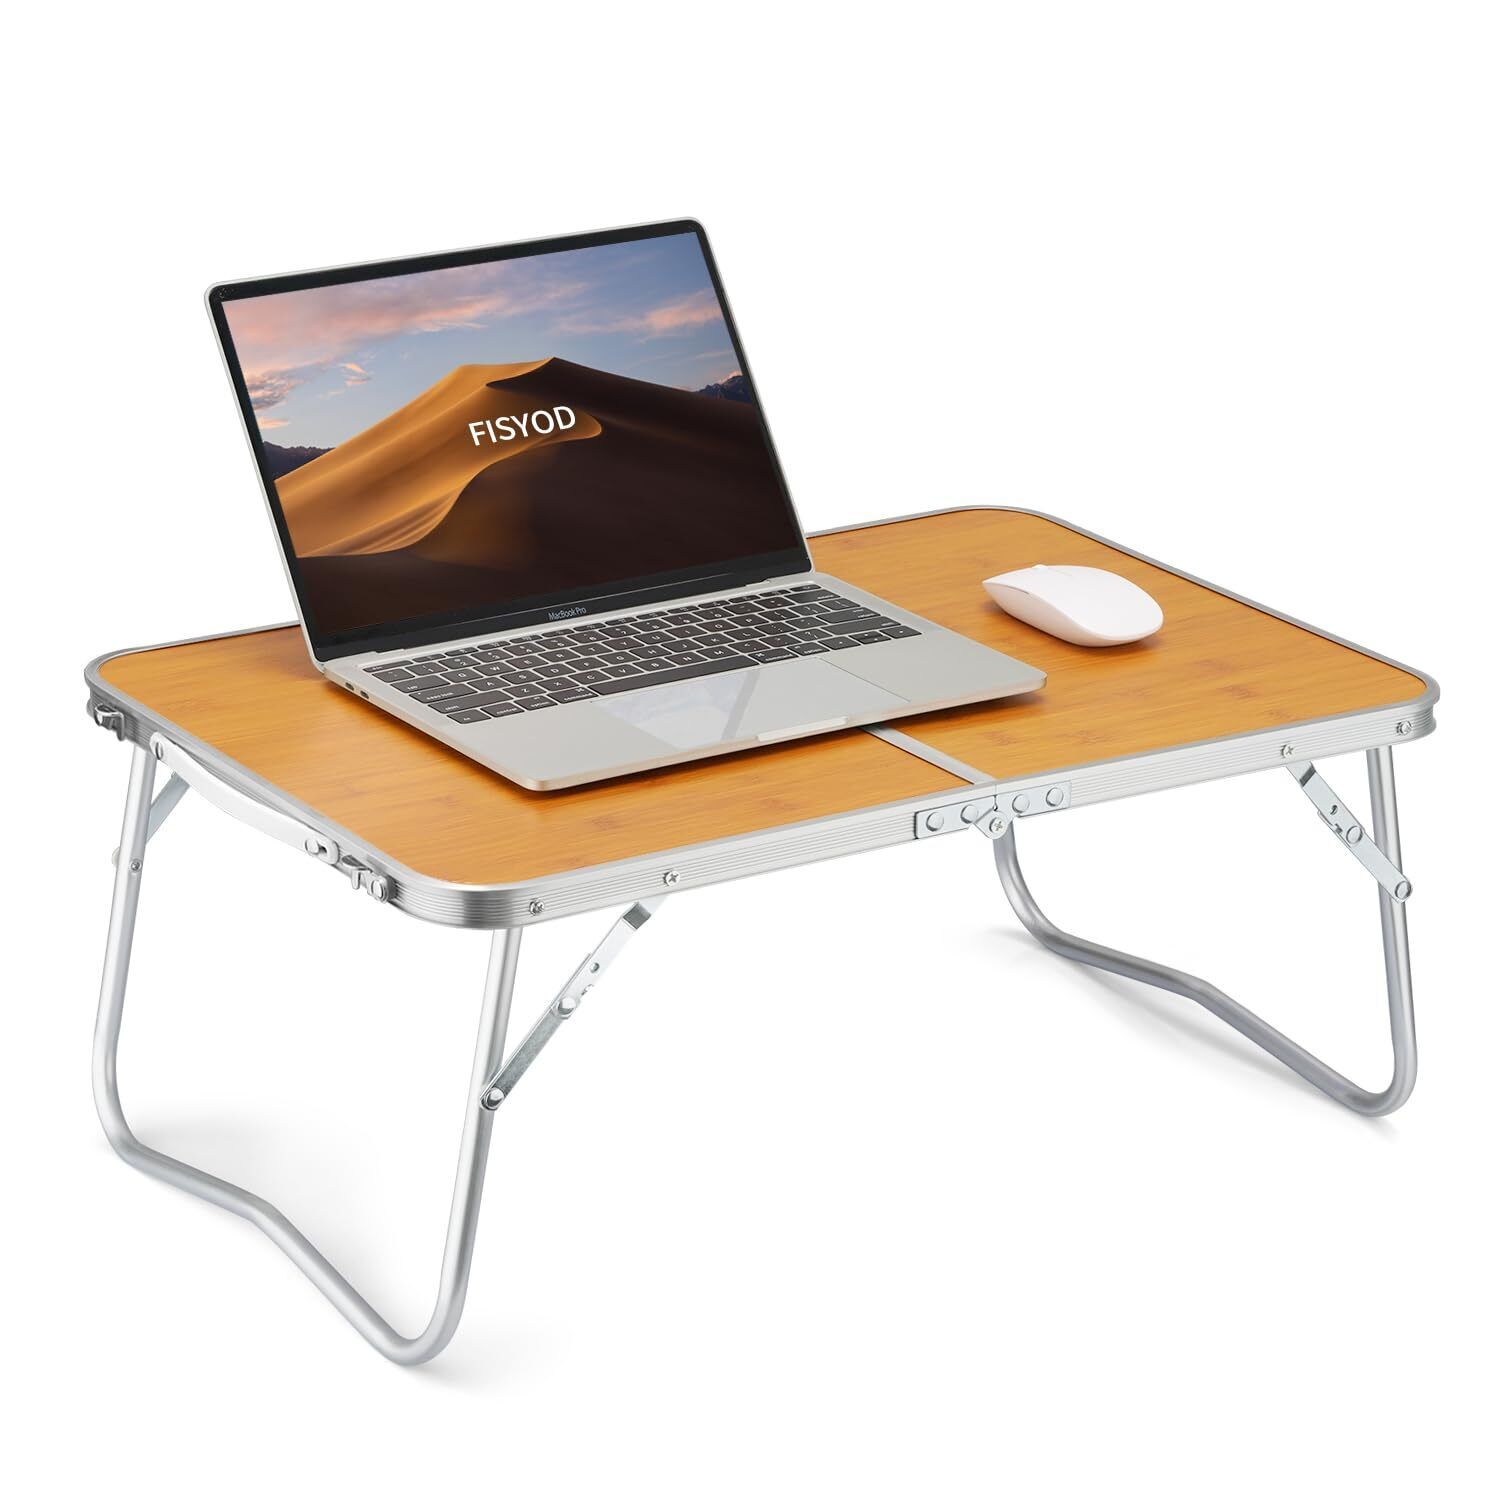 FISYOD Folding Laptop Table, Bed Table Lap Desk, Breakfast